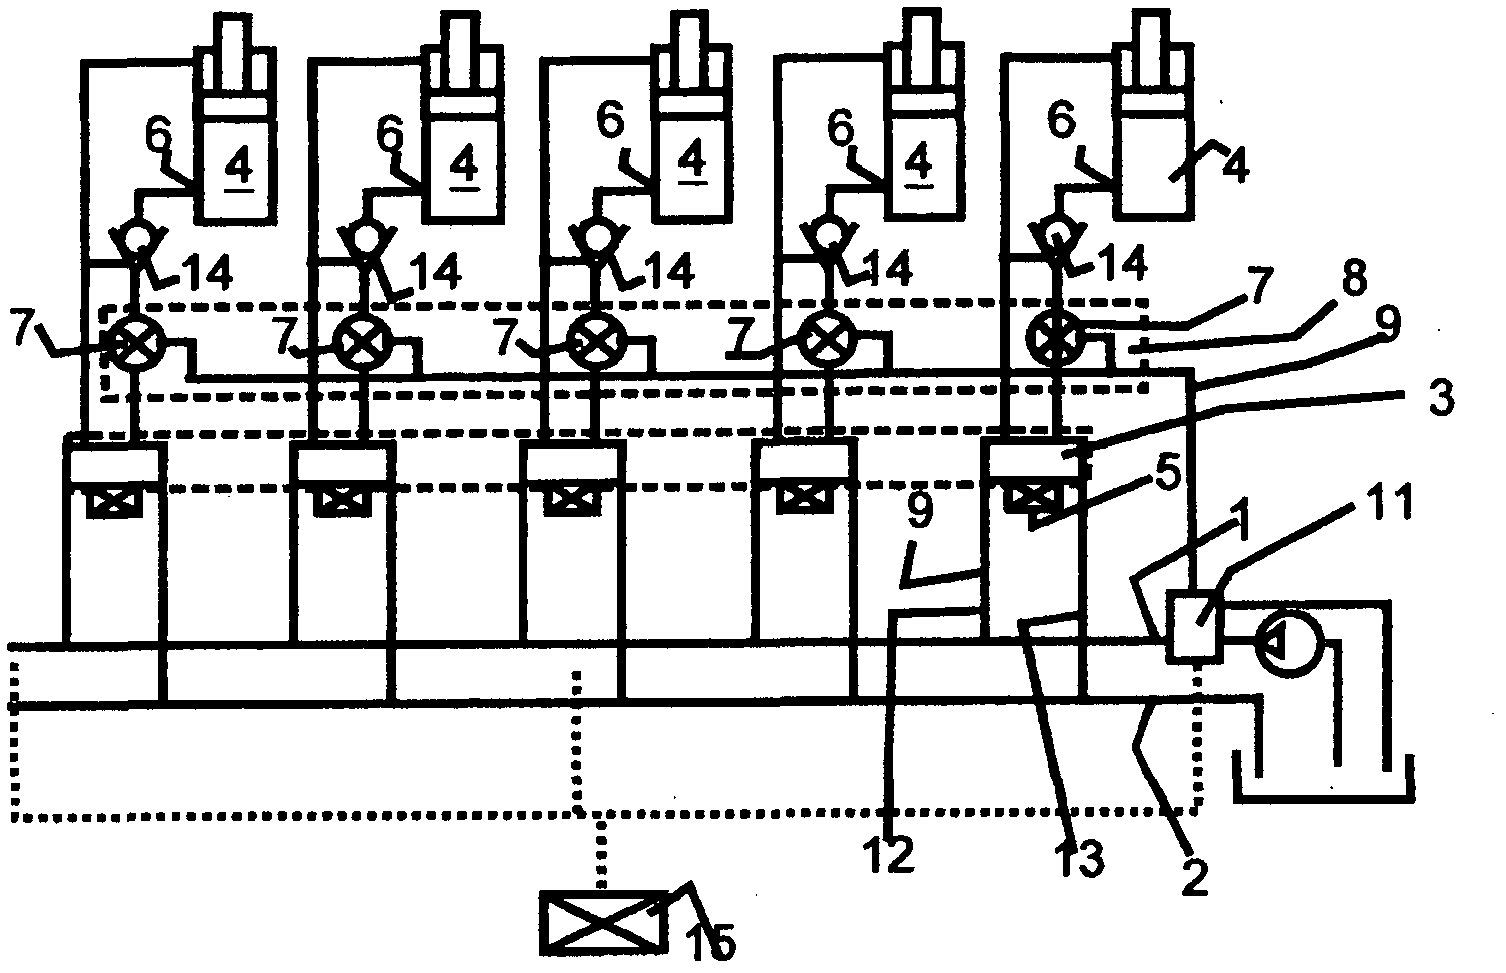 Hydraulic circuit for longwall mining